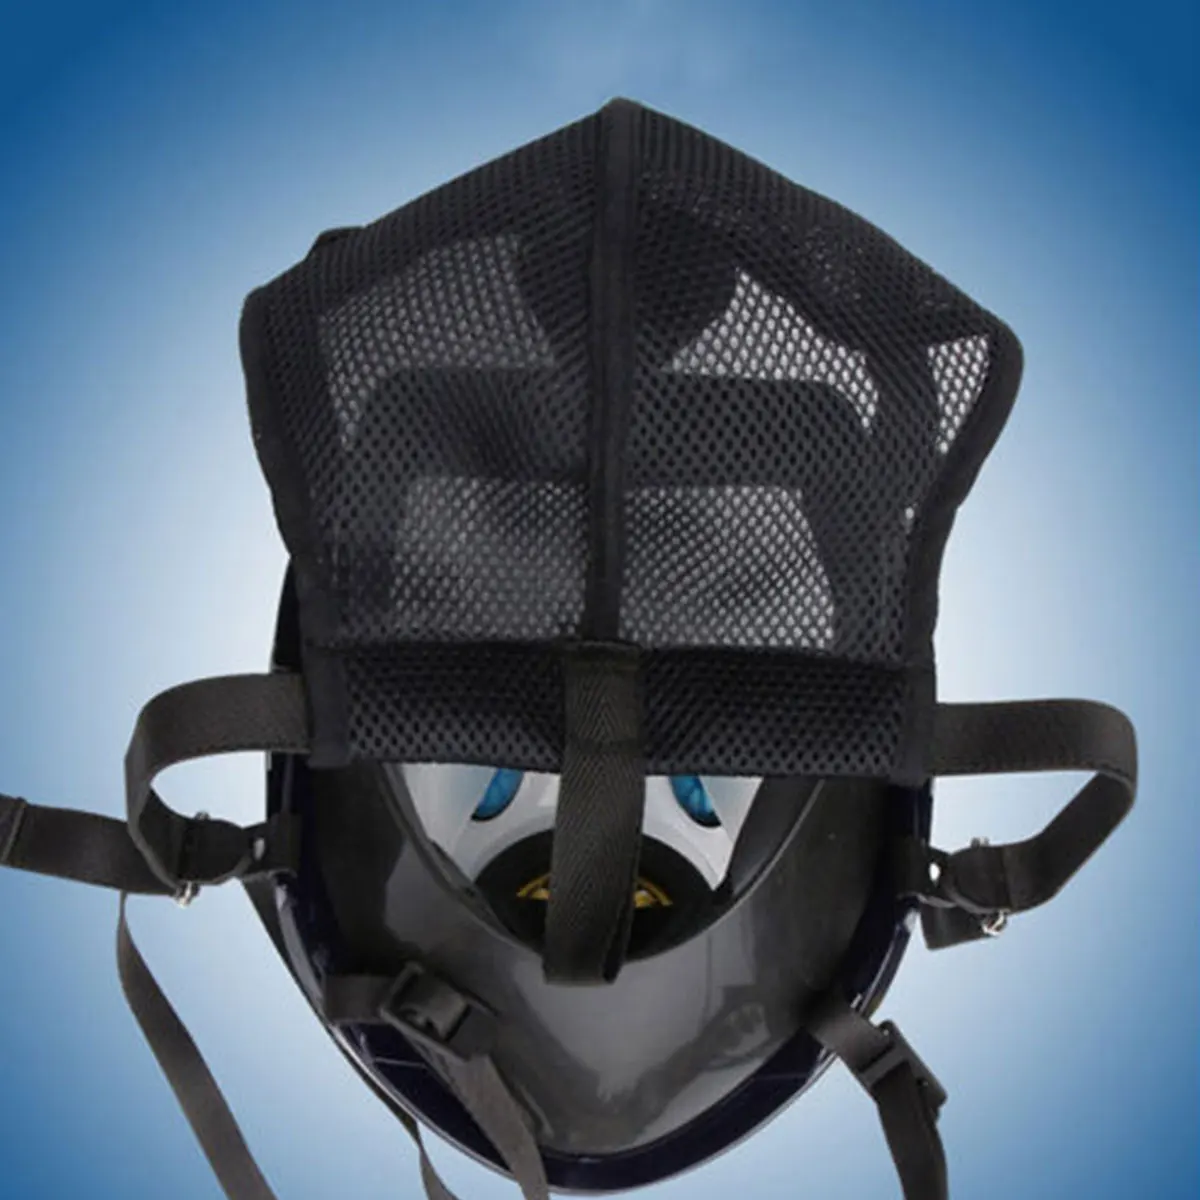 15 в 1 противогаз анфаса For-3M 6800 уход за кожей лица из респиратор картина распыления маска для химической лаборатории медицинская защитная маска